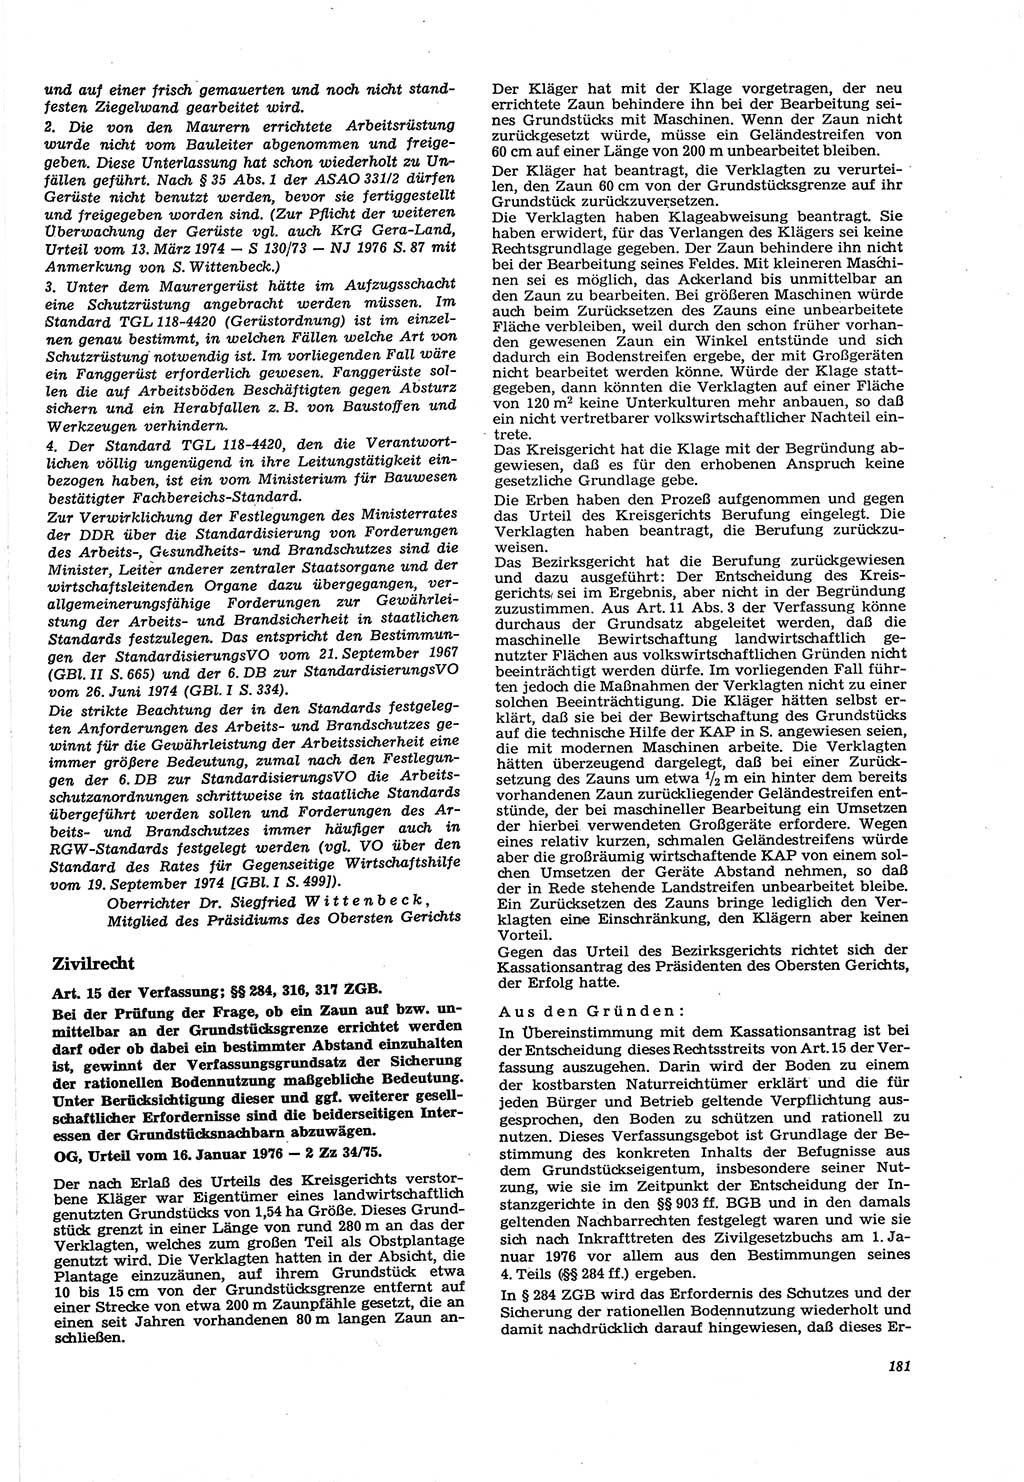 Neue Justiz (NJ), Zeitschrift für Recht und Rechtswissenschaft [Deutsche Demokratische Republik (DDR)], 30. Jahrgang 1976, Seite 181 (NJ DDR 1976, S. 181)